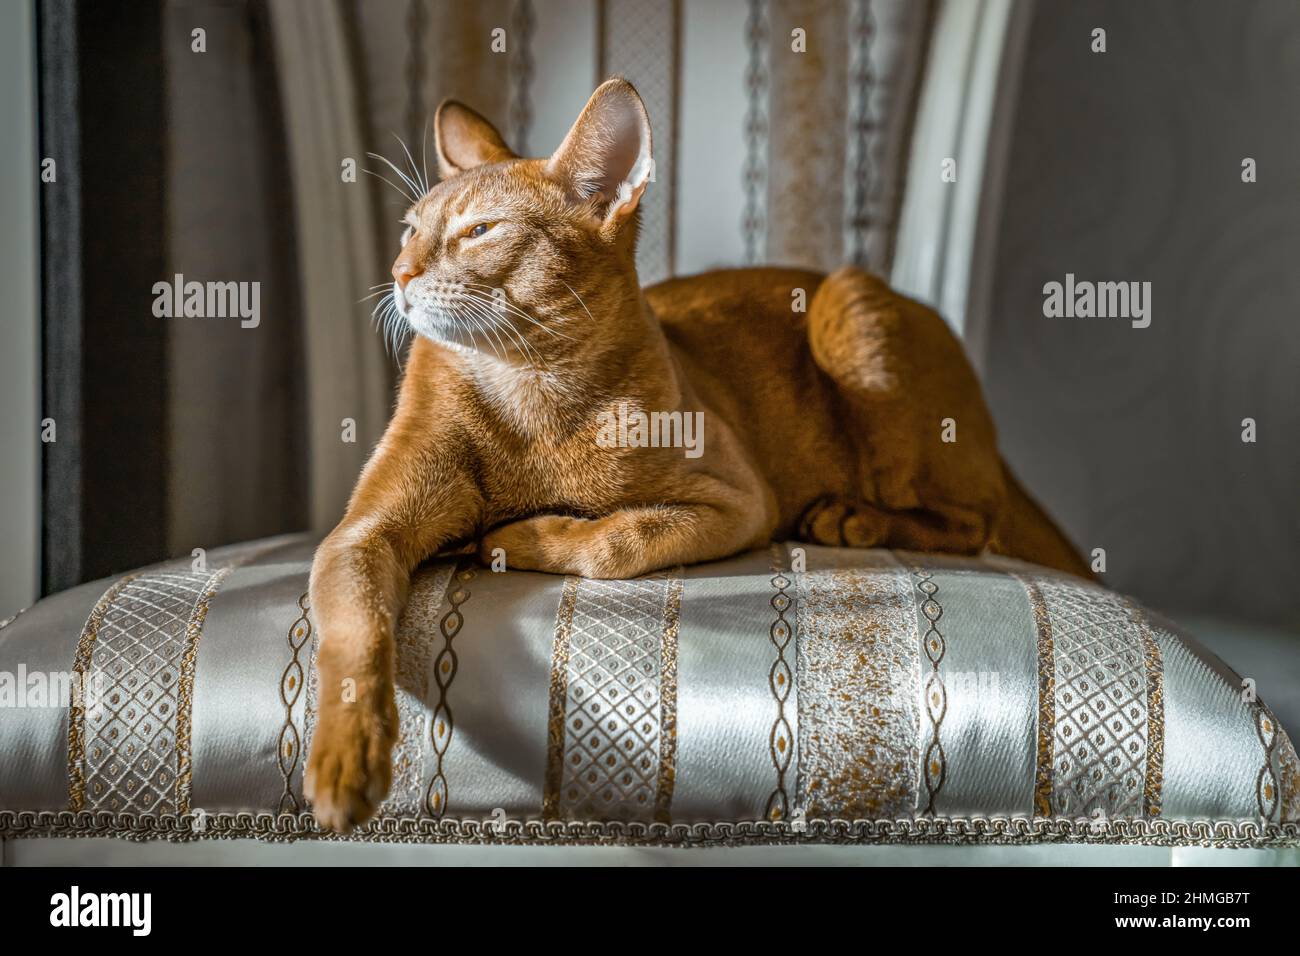 Le chat rouge de race abyssinienne repose sur une chaise dans une posture importante. Caloose-up. Banque D'Images